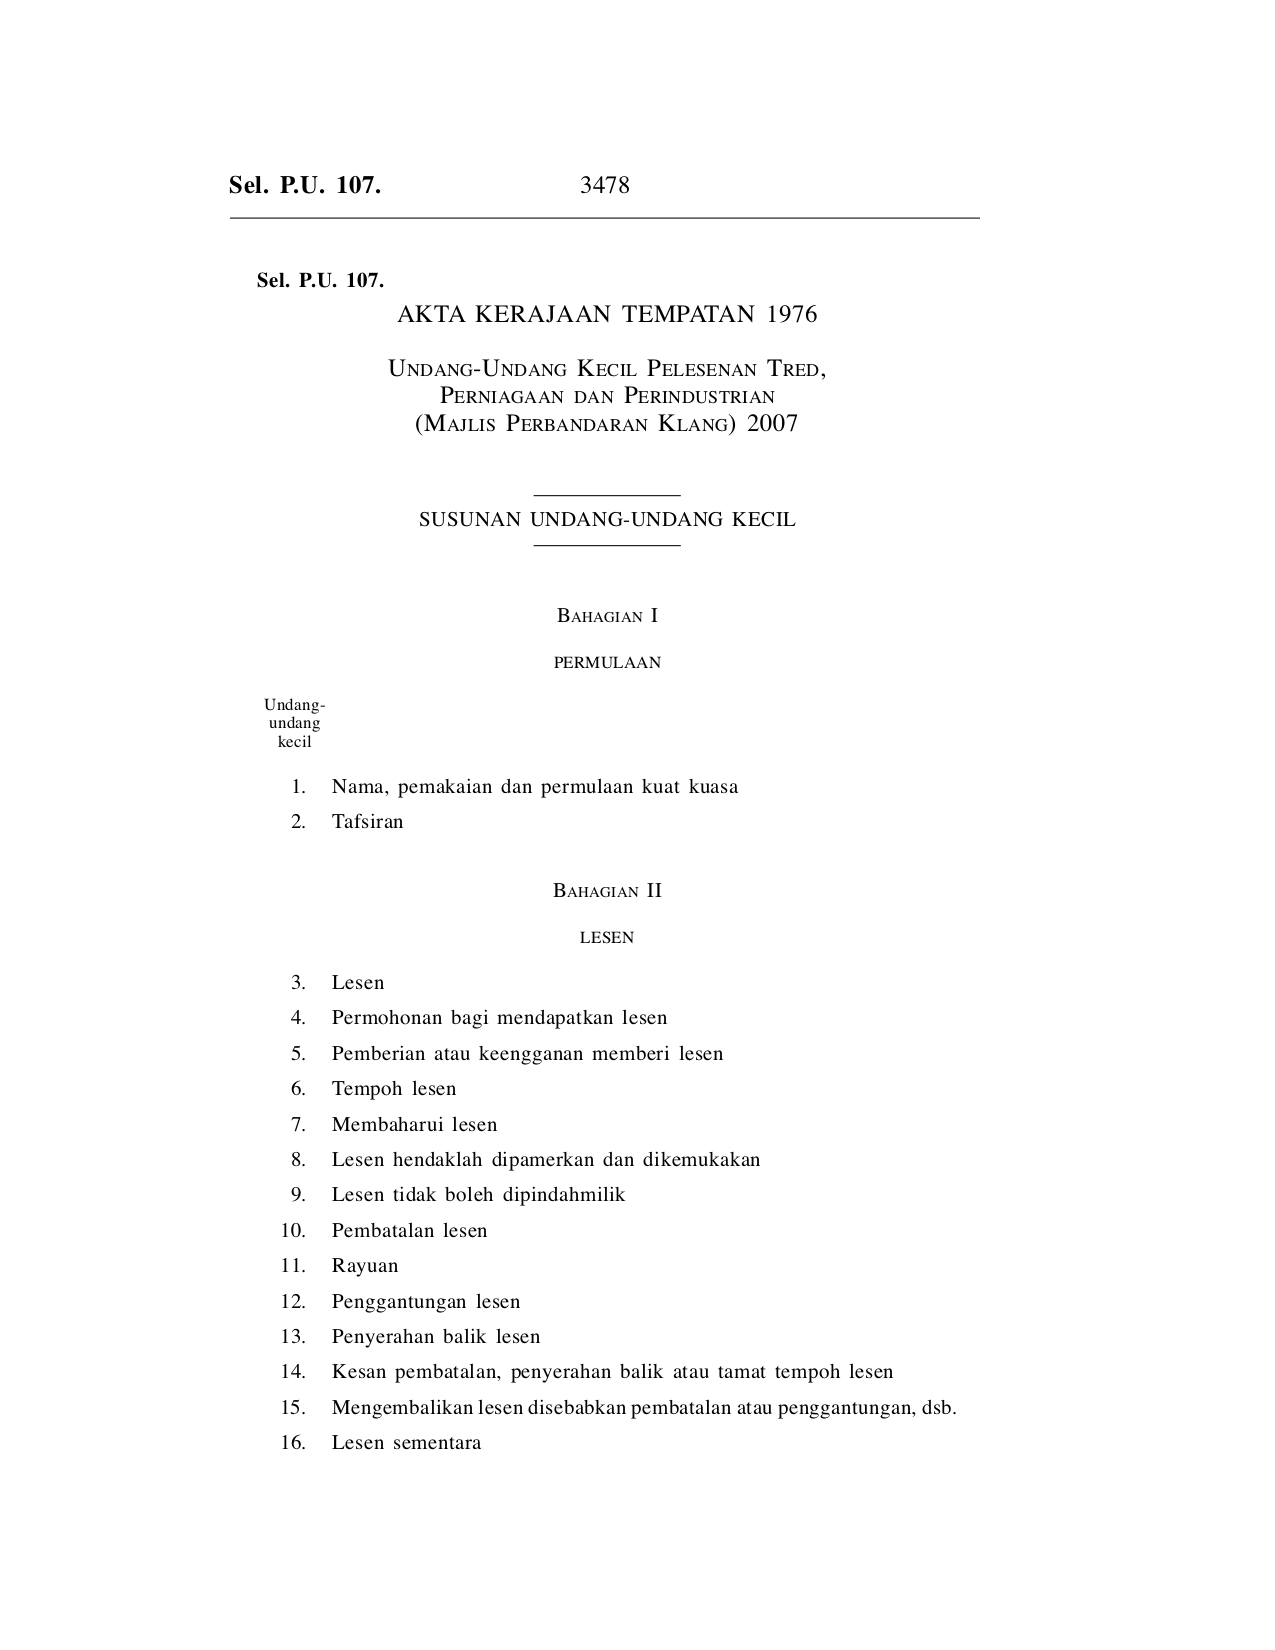 Undang-Undang Kecil Pelesenan Tred, Perniagaan Dan Perindustrian (Majlis Perbandaran Klang) 2007 - Akta Kerajaan Tempatan 1976